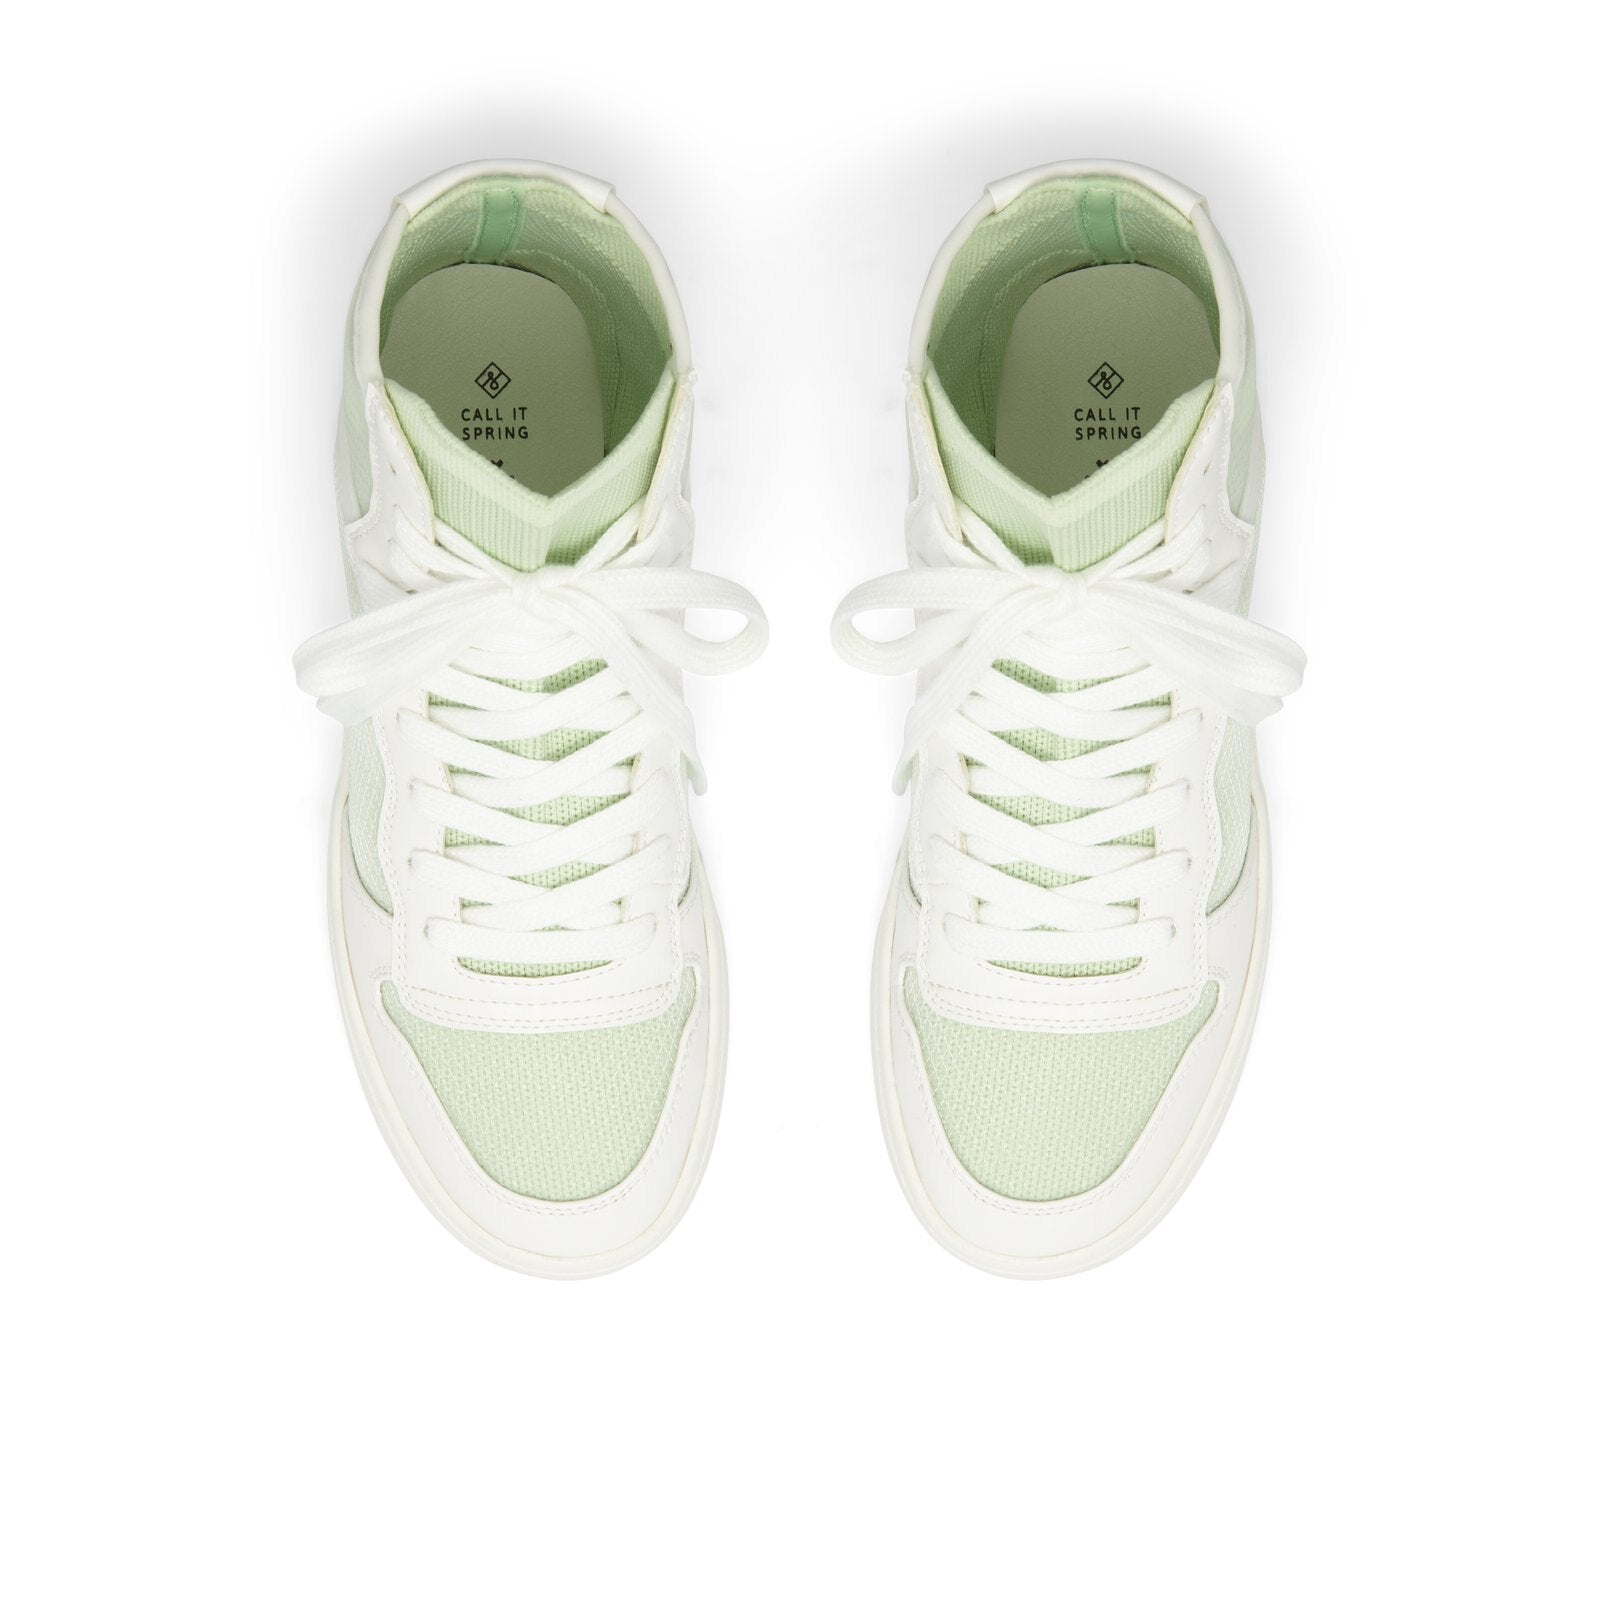 Kaylee Women Shoes - Light Green - CALL IT SPRING KSA